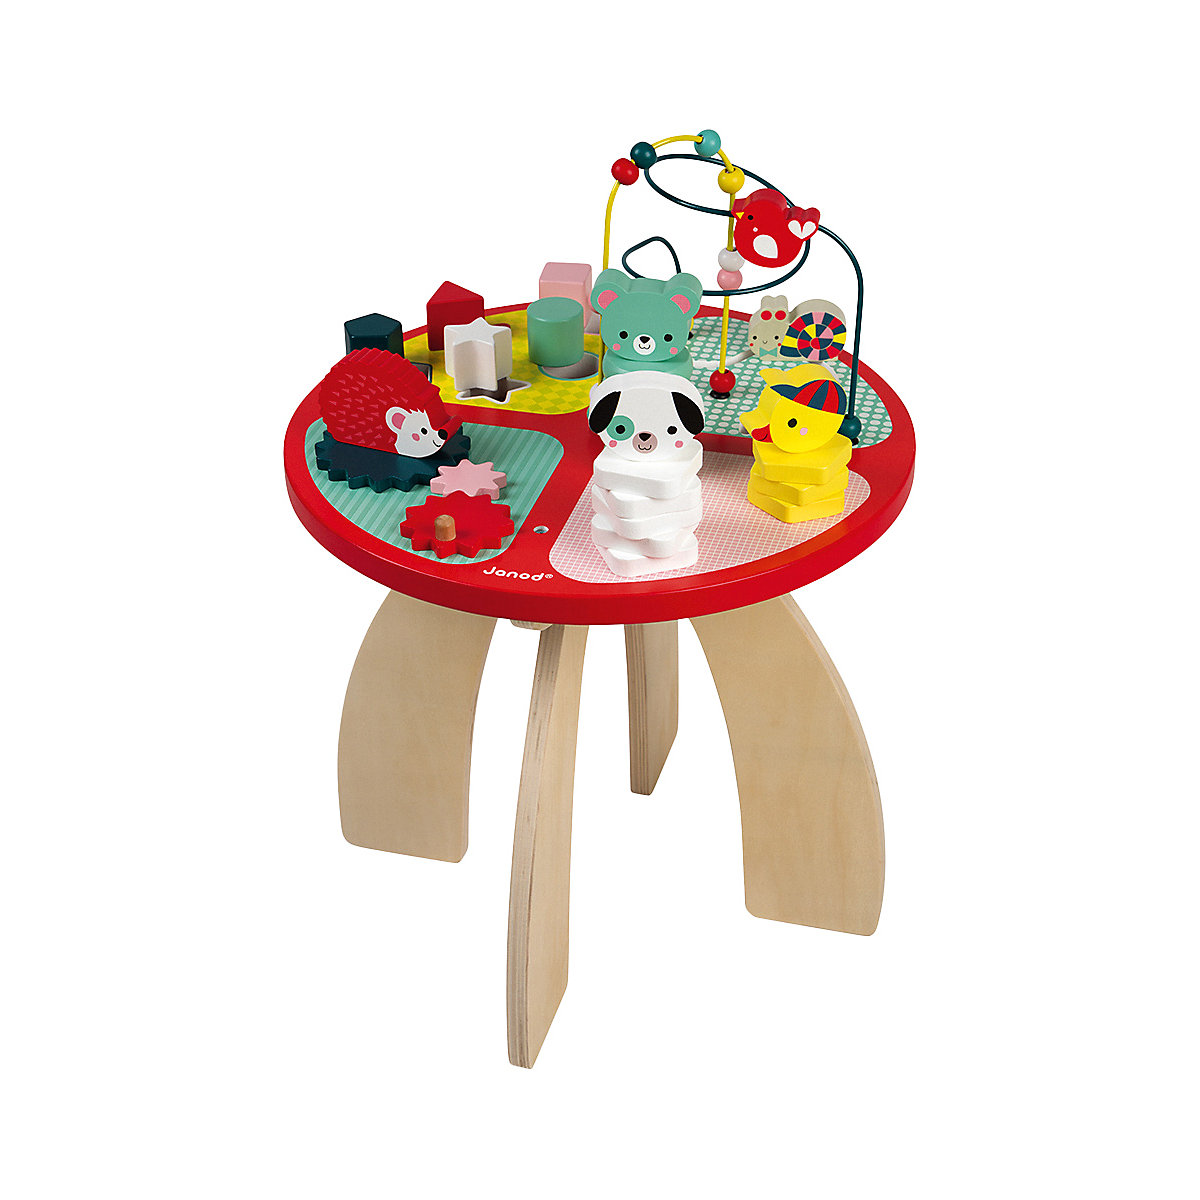 Janod Spieltisch Baby Forest aus Holz Stapeln Sortieren und Geschicklichkeit Baby Spielzeug mit Labyrinth Zahnradsystem Abakus und 3 Holztieren Holzspielzeug ab 1 Jahr J08018